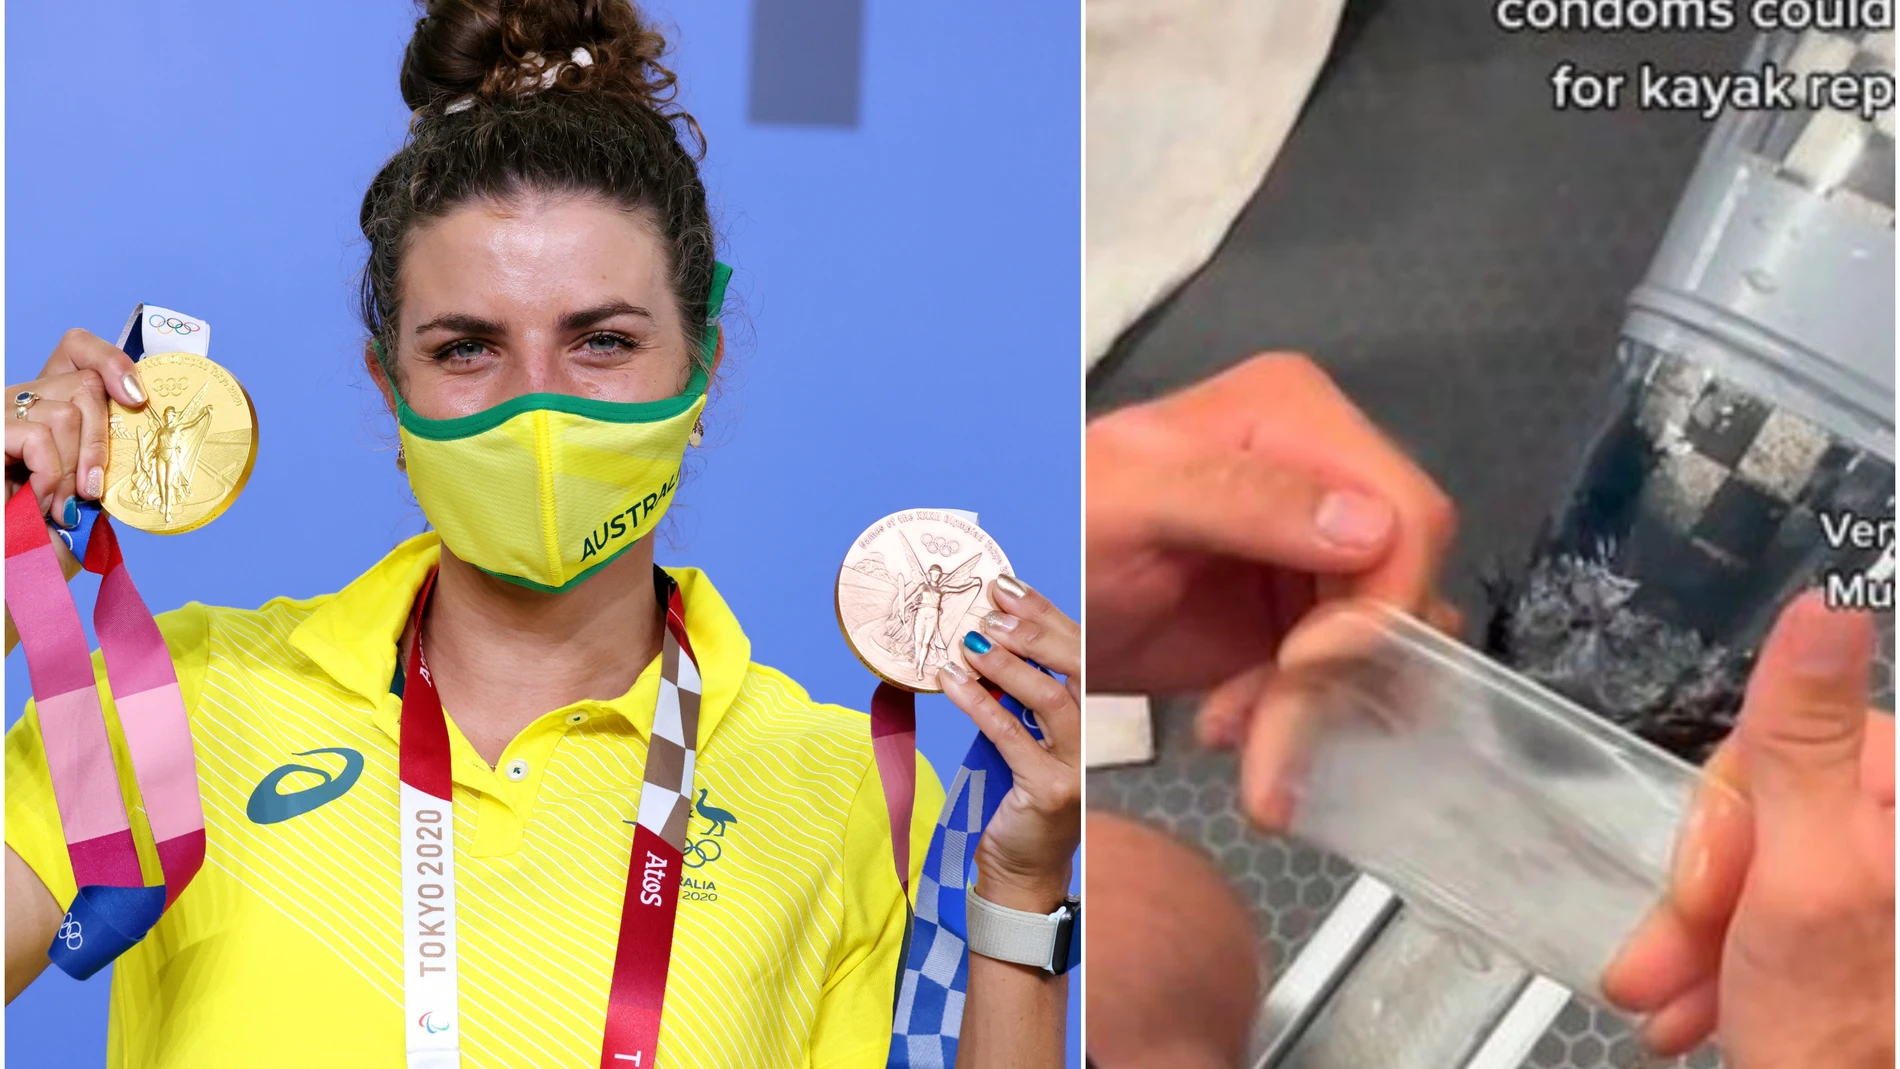 Jessica Fox logra el bronce olímpico tras reparar su kayak... ¡con un condón!